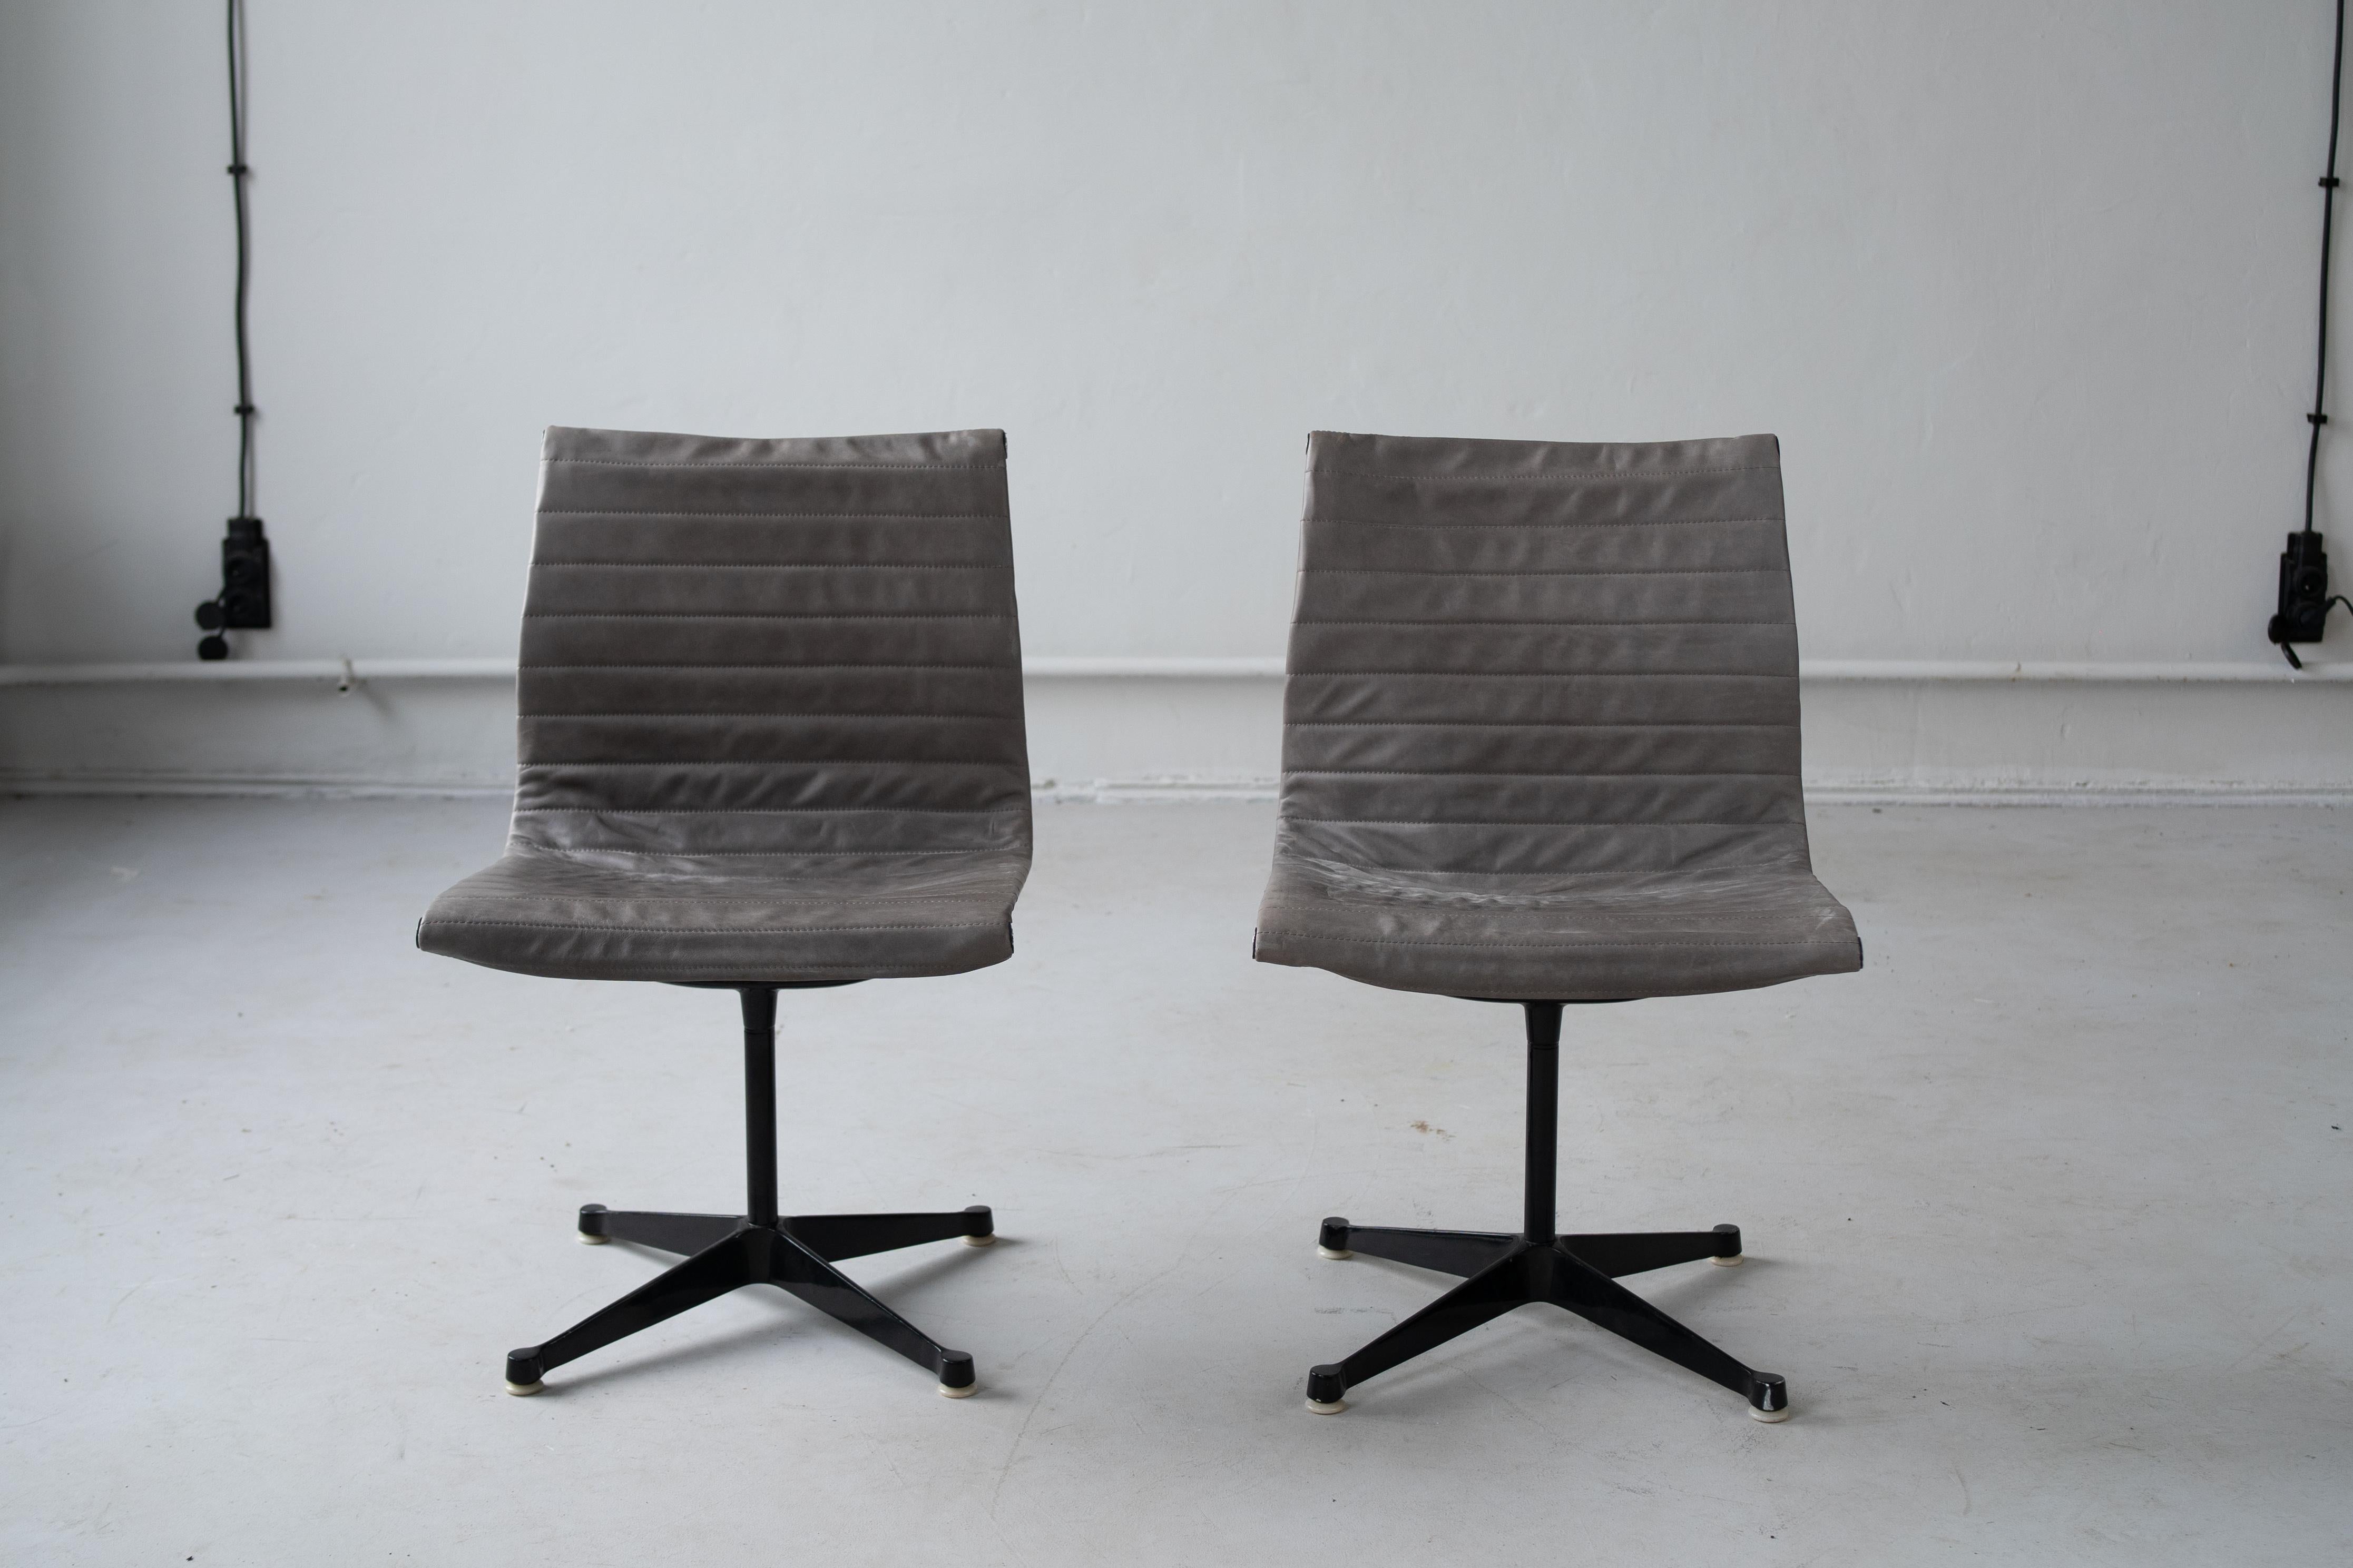 Chaise EA 116 conçue par Charles et Ray Eames, à la fin des années 50.
Pieds en acier noir et sellerie en cuir gris.
Fonctionnel, solide et élégant. 
Un ensemble de 2 chaises